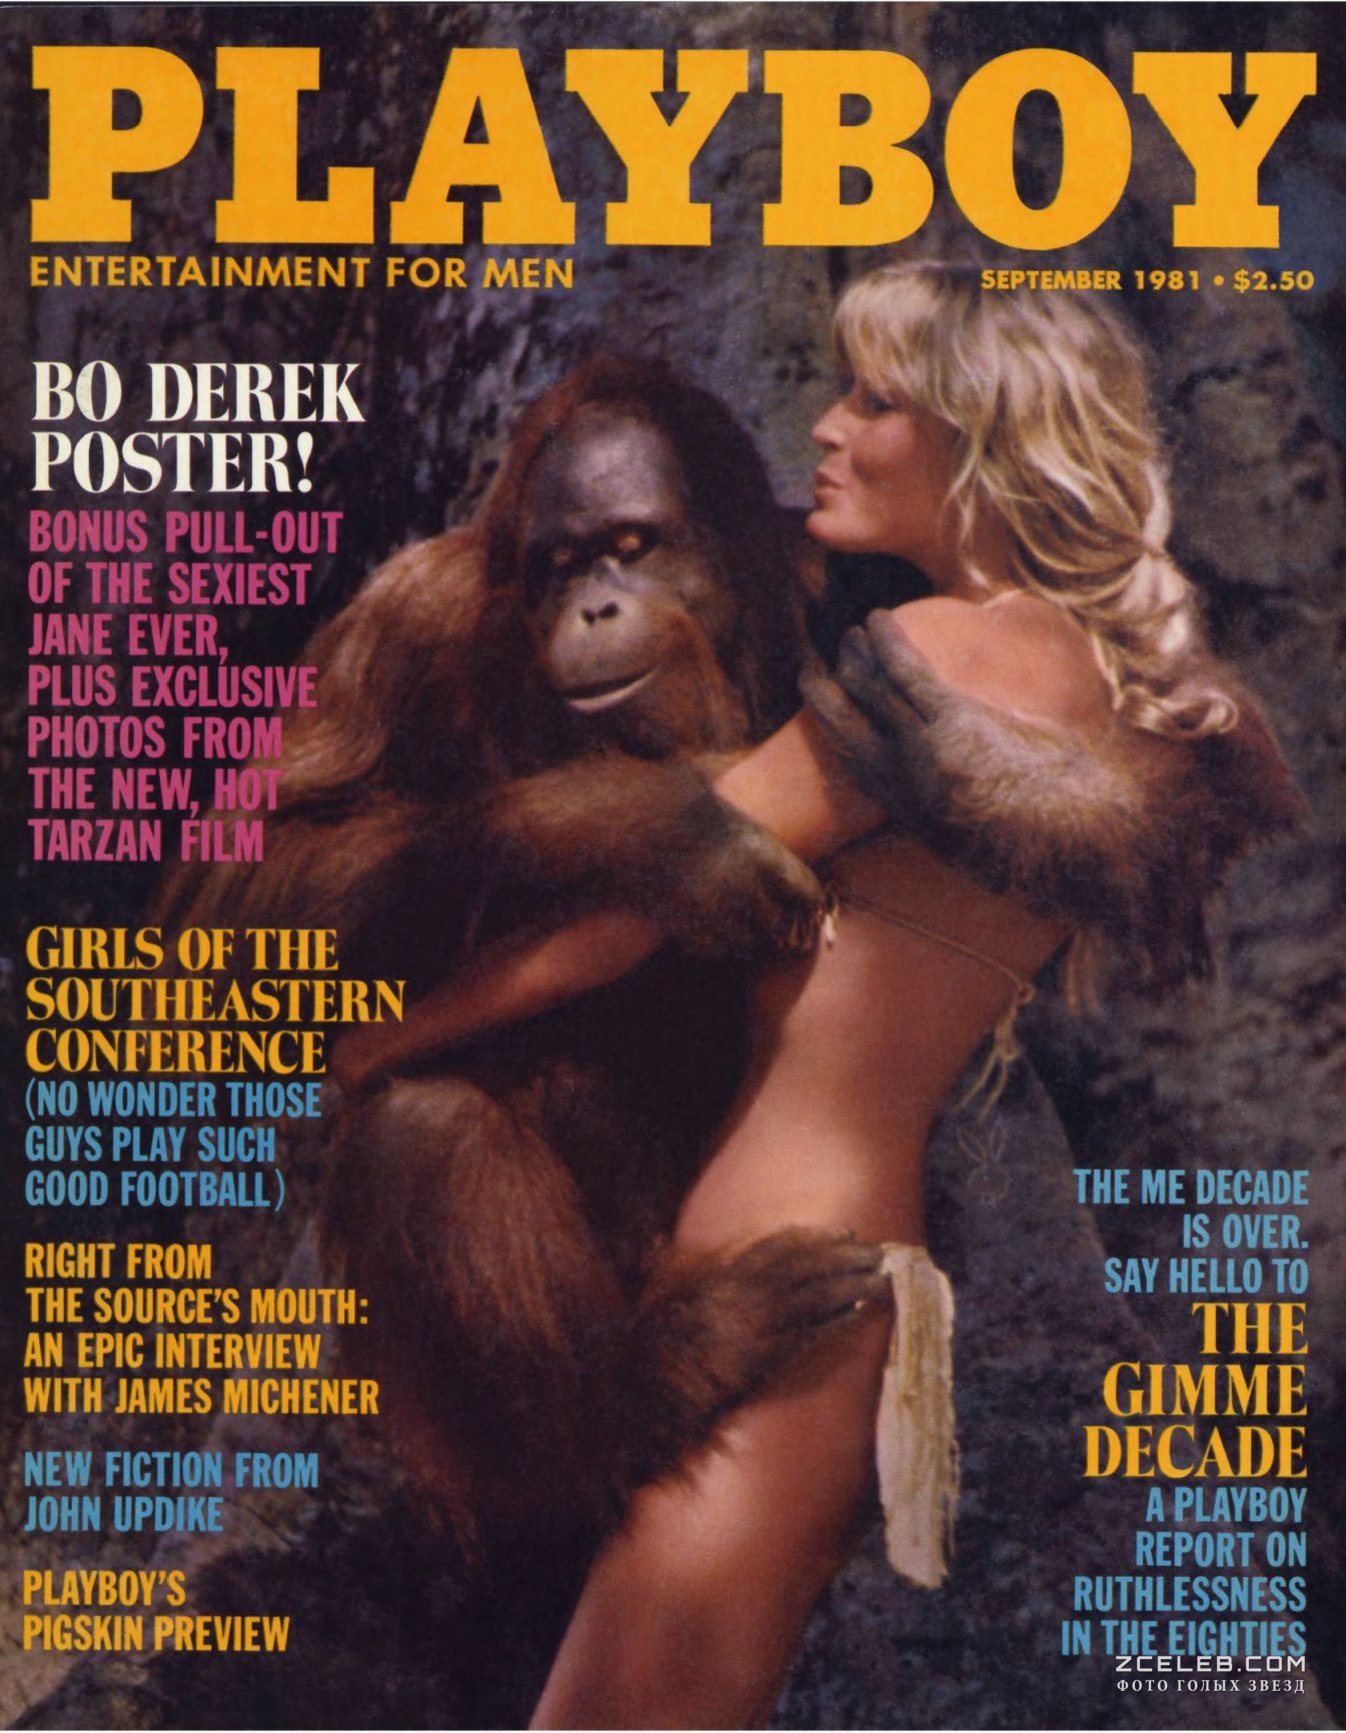 Фото с голой Бо Дерек в журнале Playboy, Сентябрь 1981.